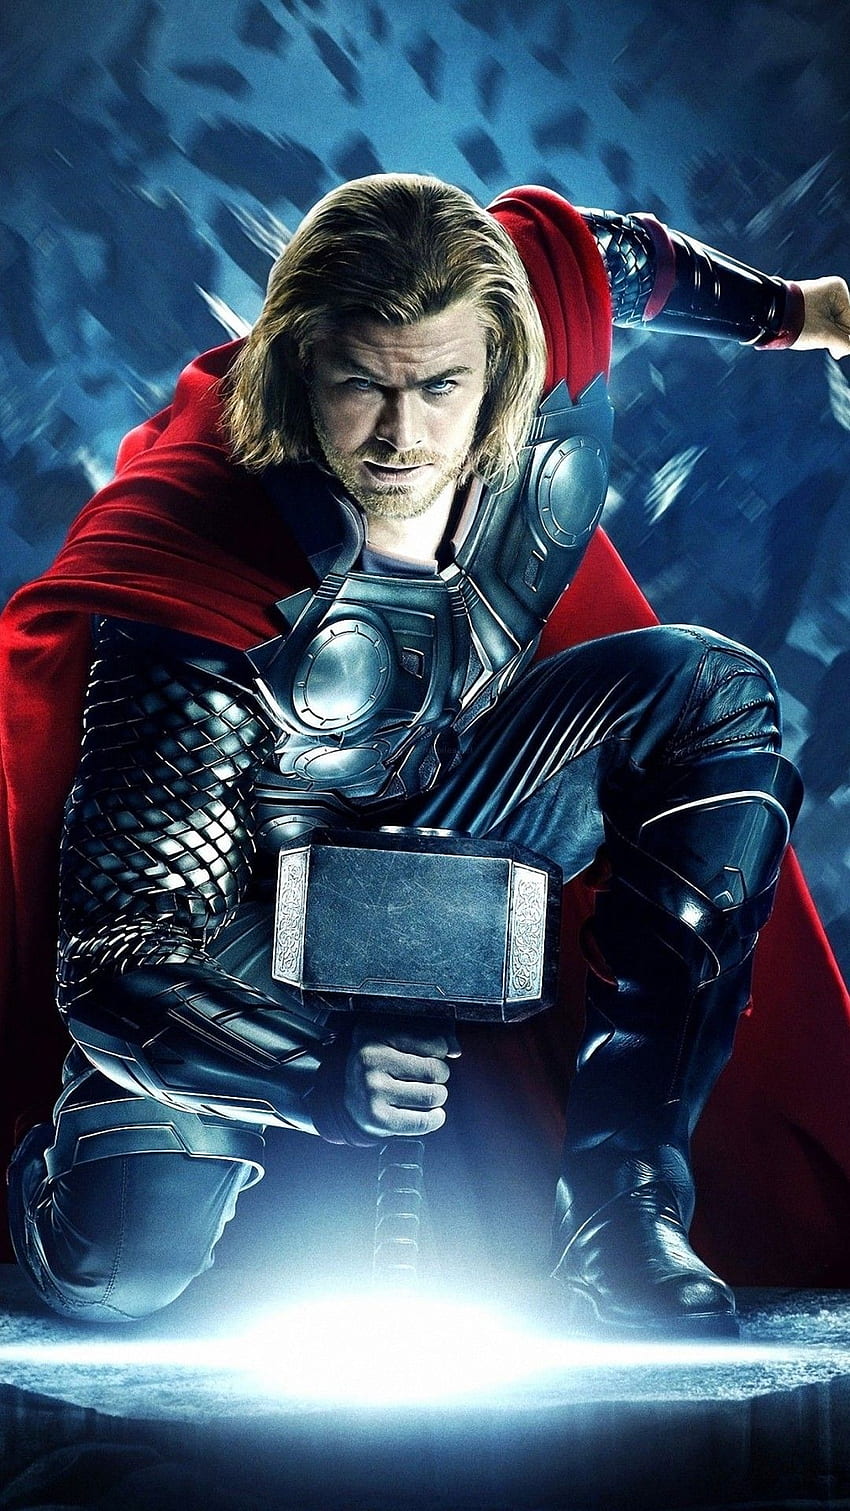 Thor Lightning GIFs | Tenor